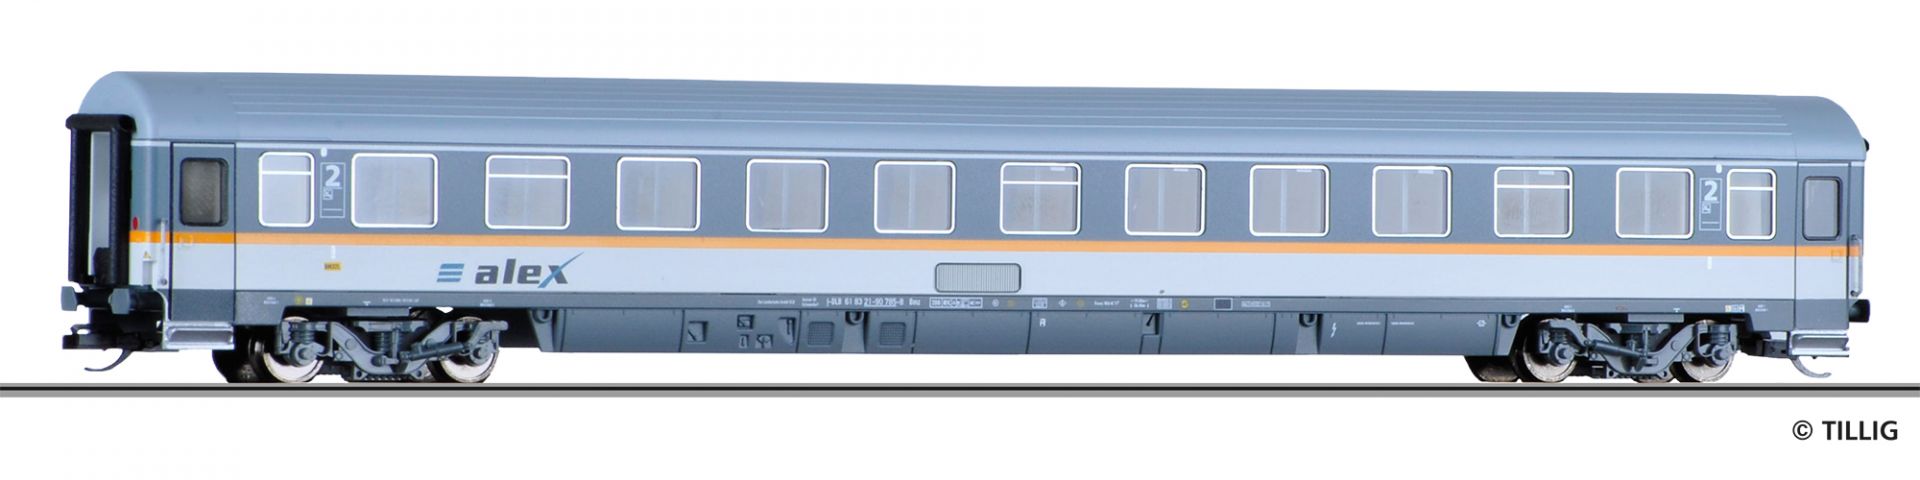 16272 | Reisezugwagen DLB -werksseitig ausverkauft-